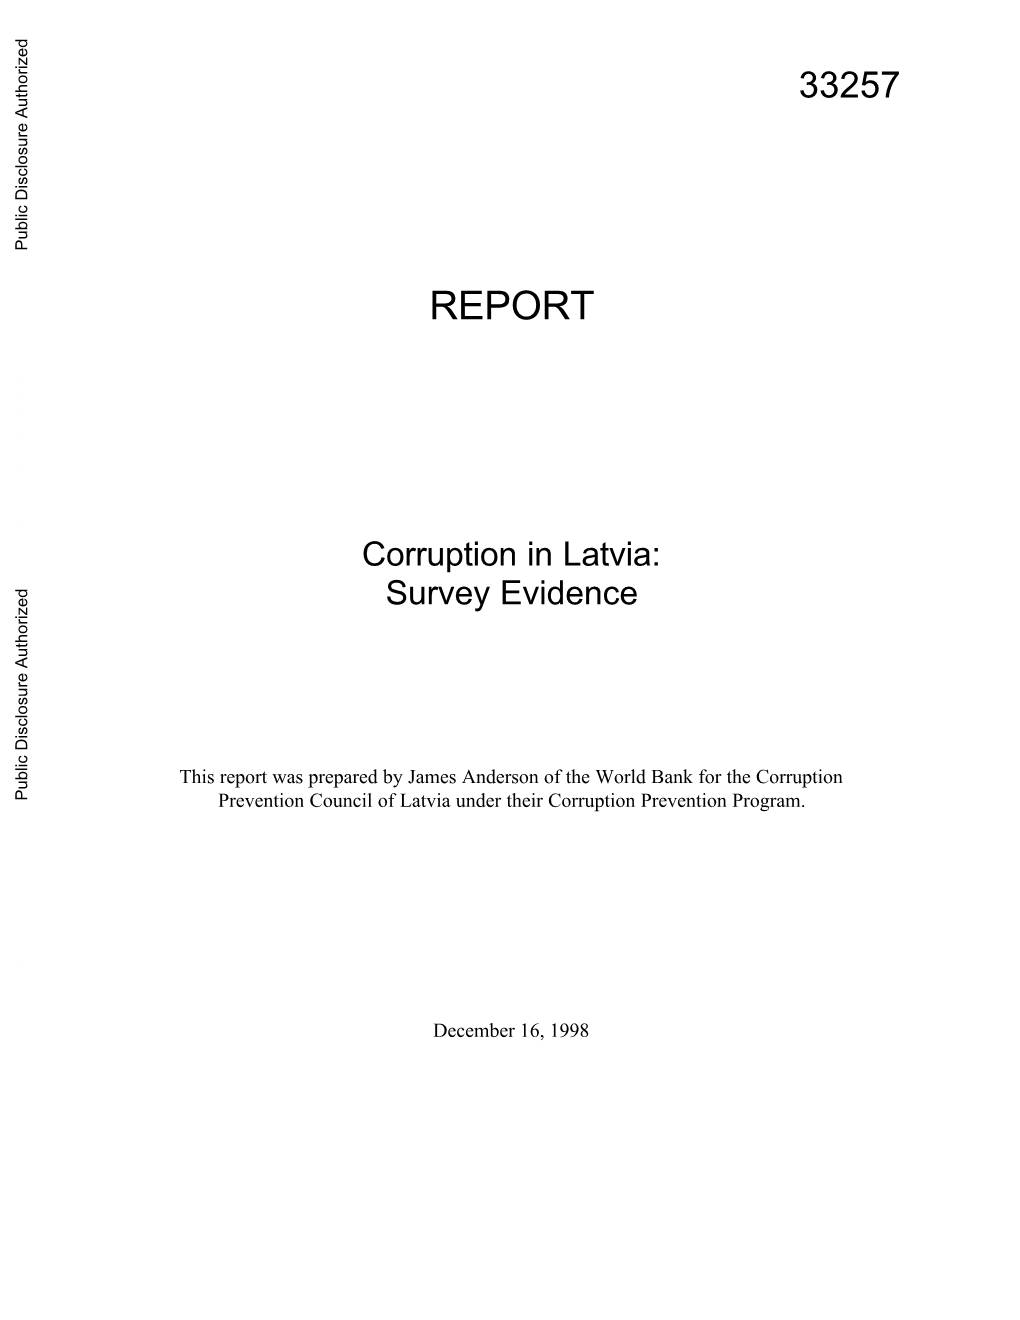 Corruption in Latvia: Survey Evidence